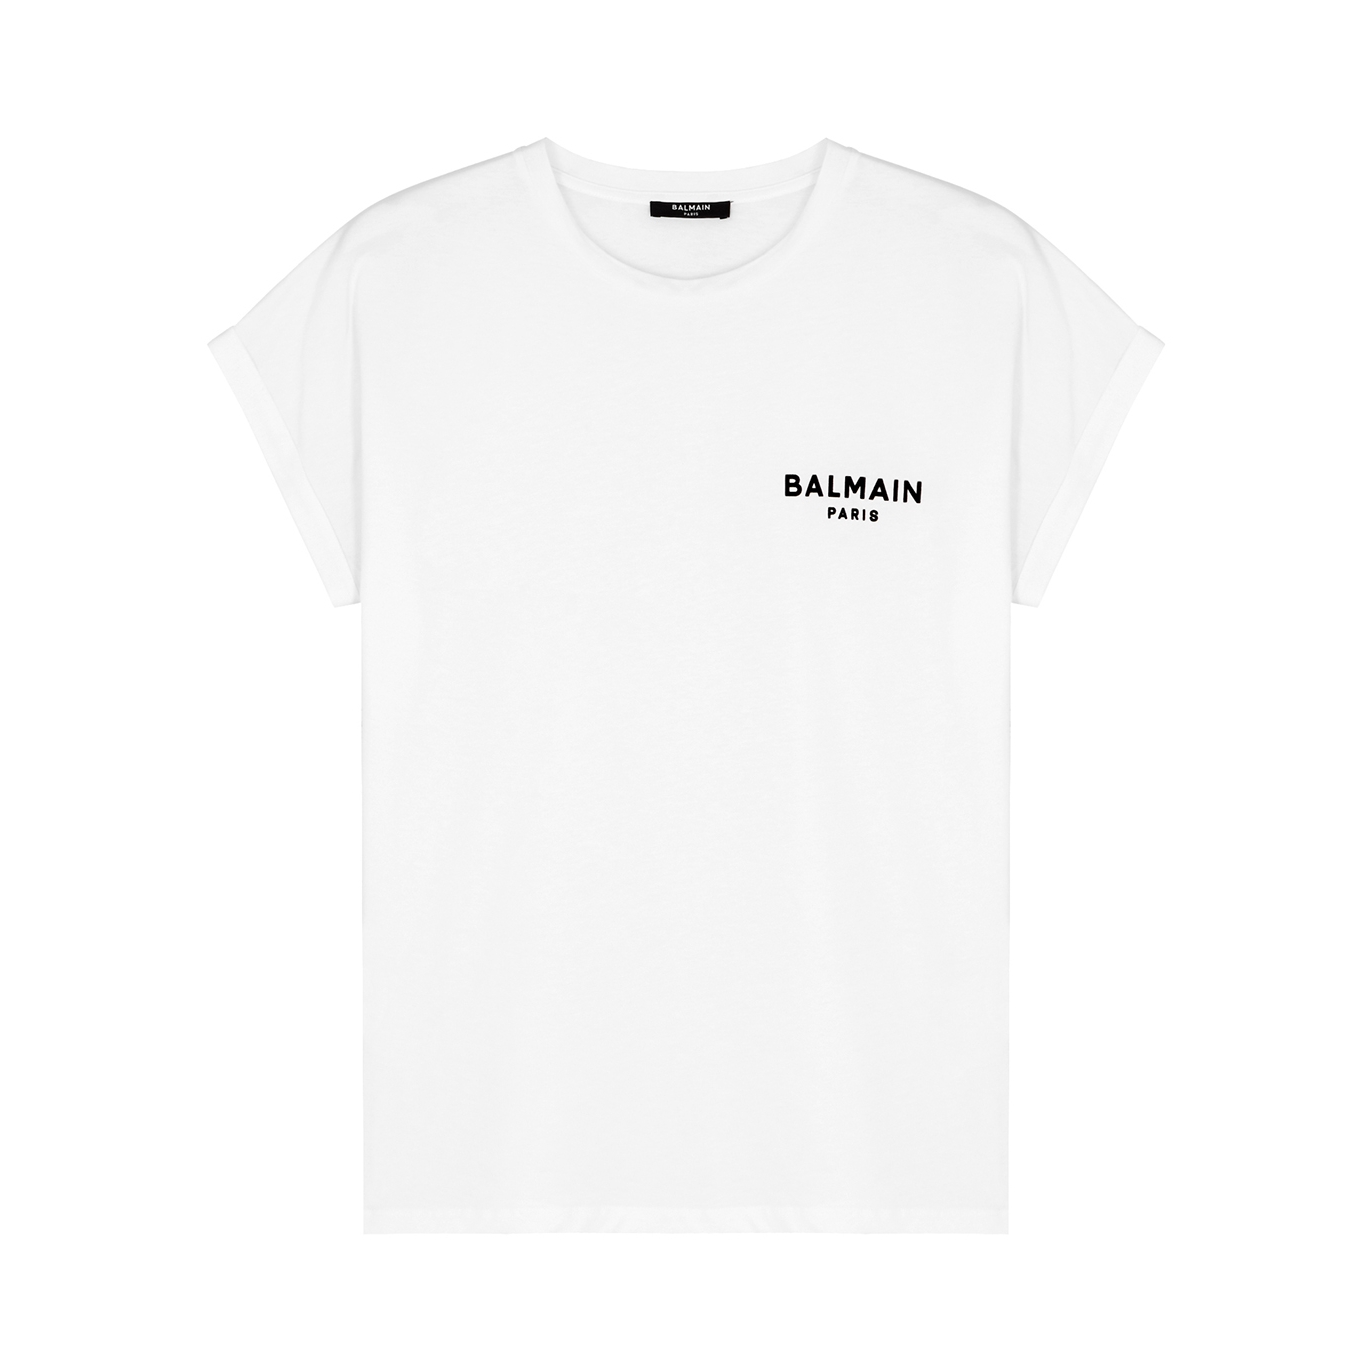 Balmain Logo Cotton T-shirt - White And Black - L